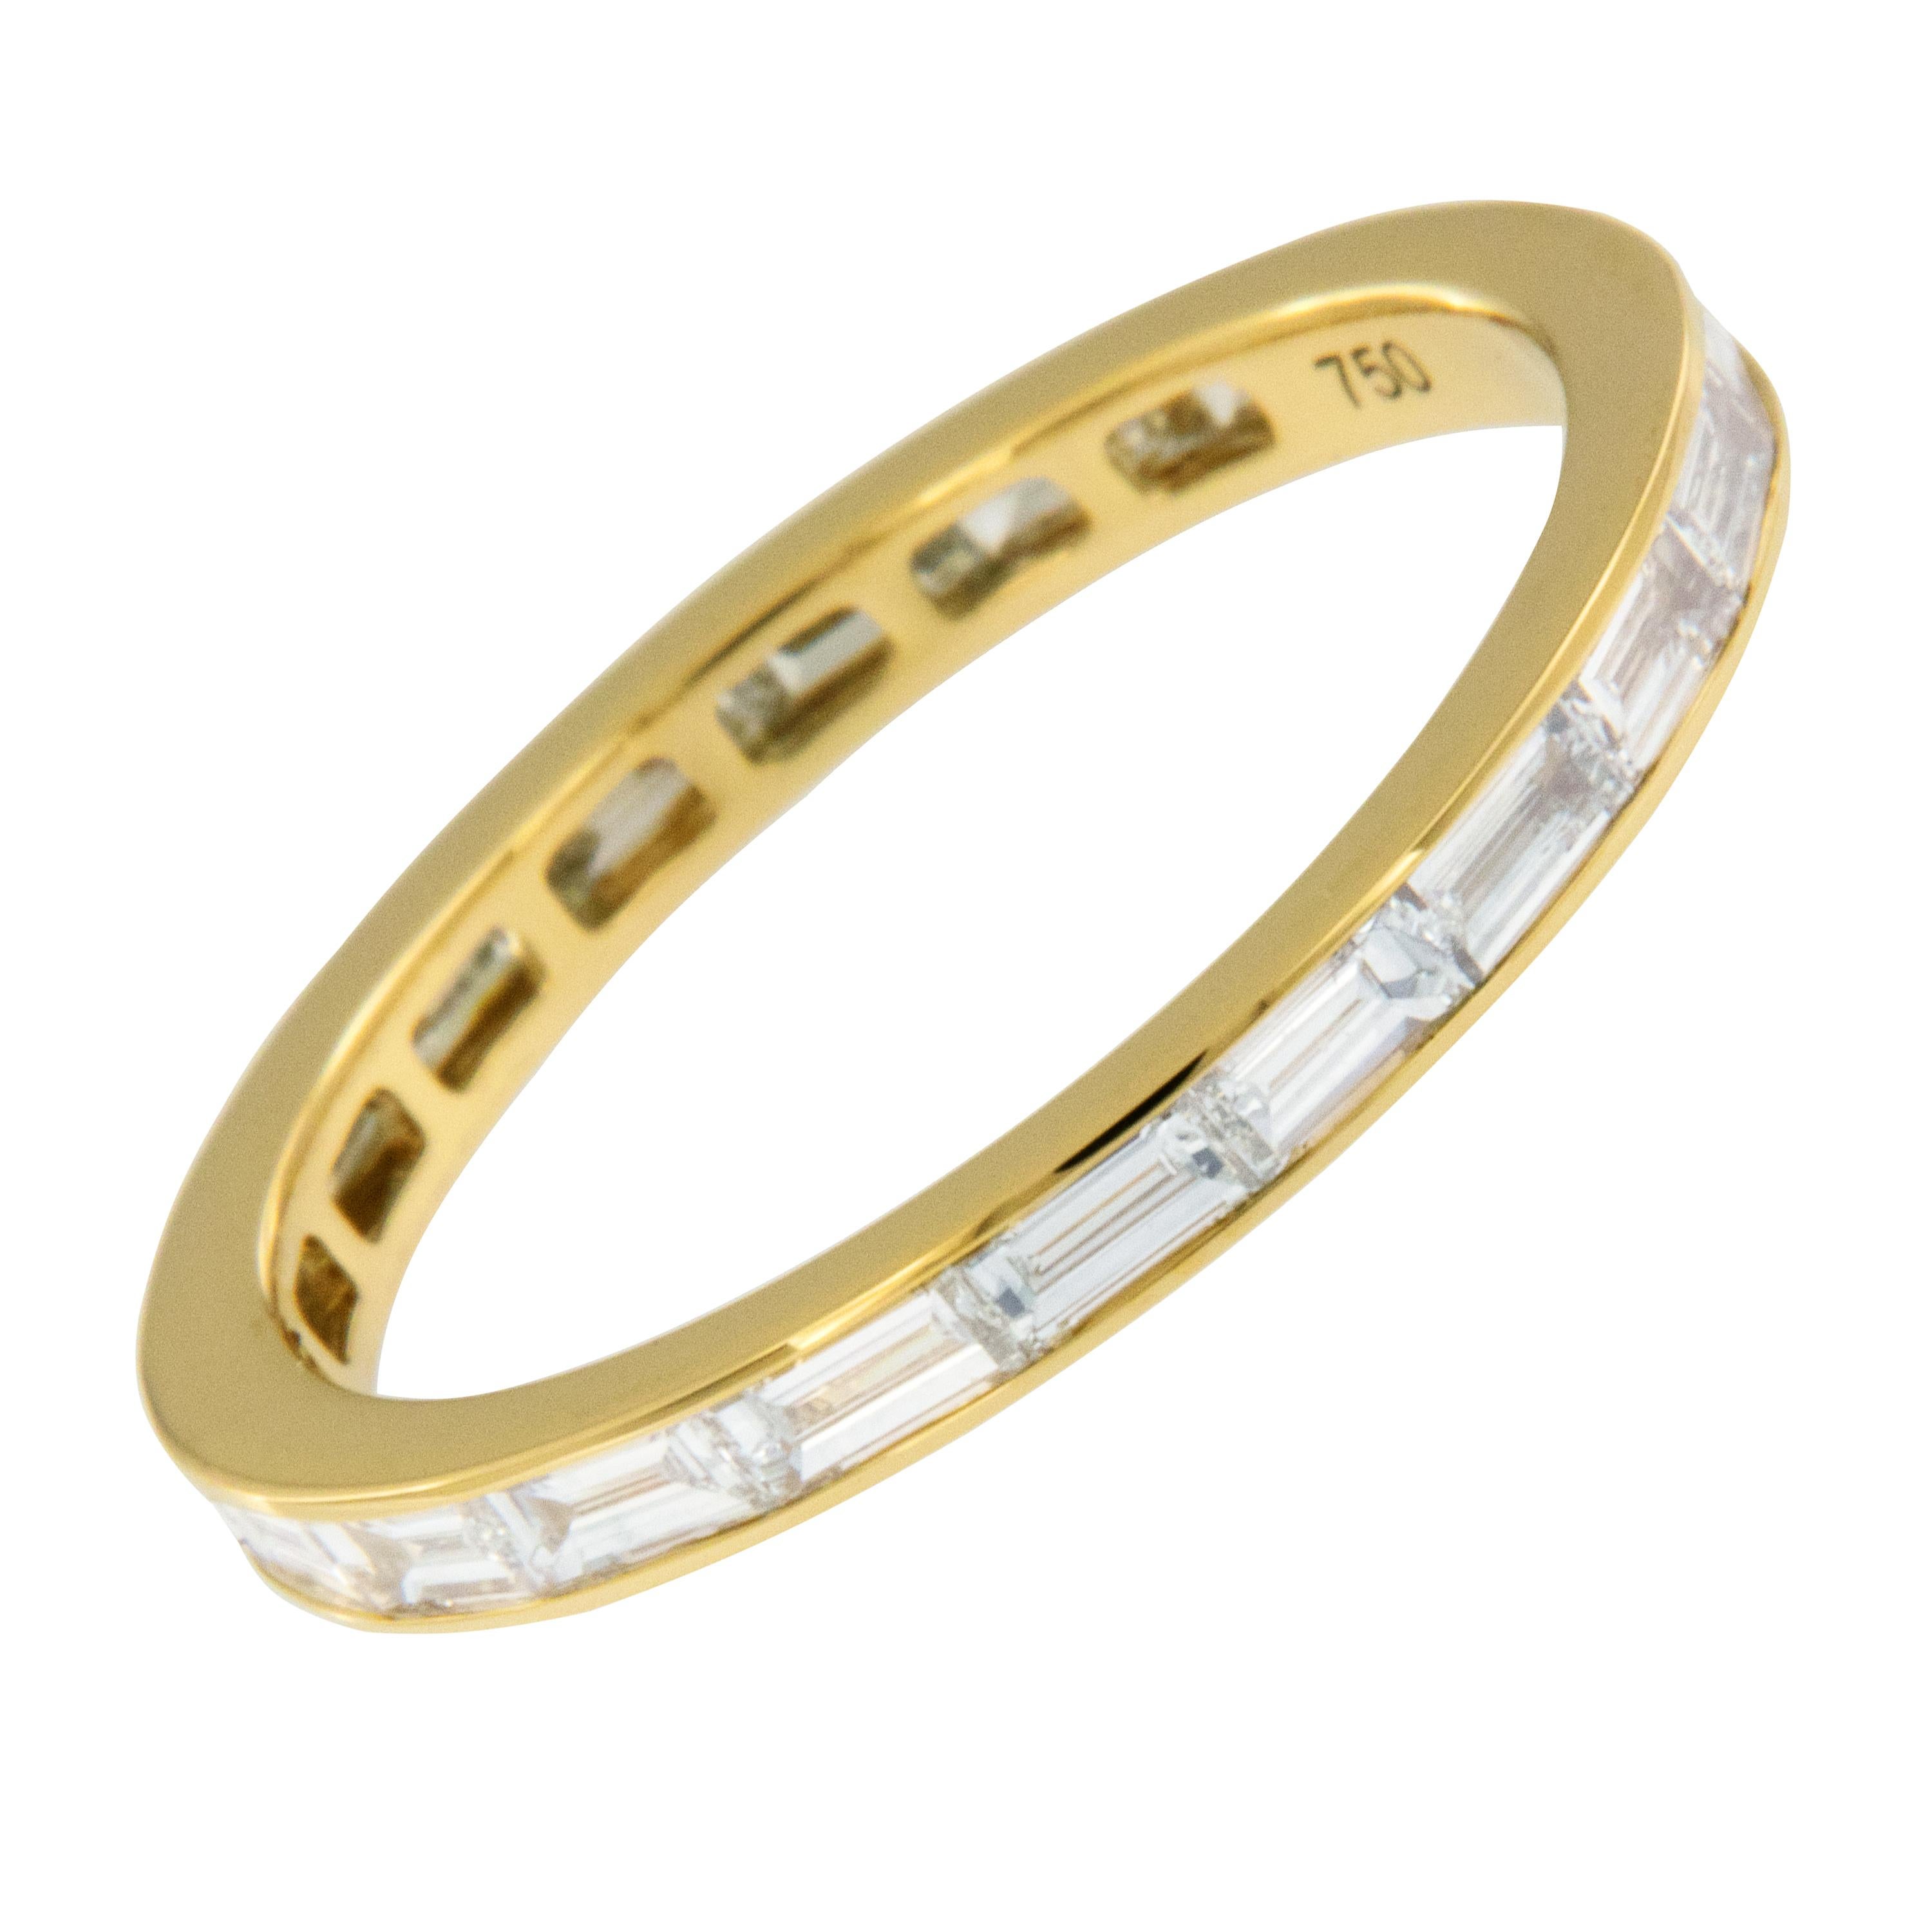 Dieses zeitlose Ewigkeitsband mit Diamanten im Baguetteschliff wurde fachmännisch aus königlichem 18-karätigem Gelbgold gefertigt und ist eine perfekte Ergänzung zu einem bestehenden Verlobungsring, kann allein getragen werden und sieht auch